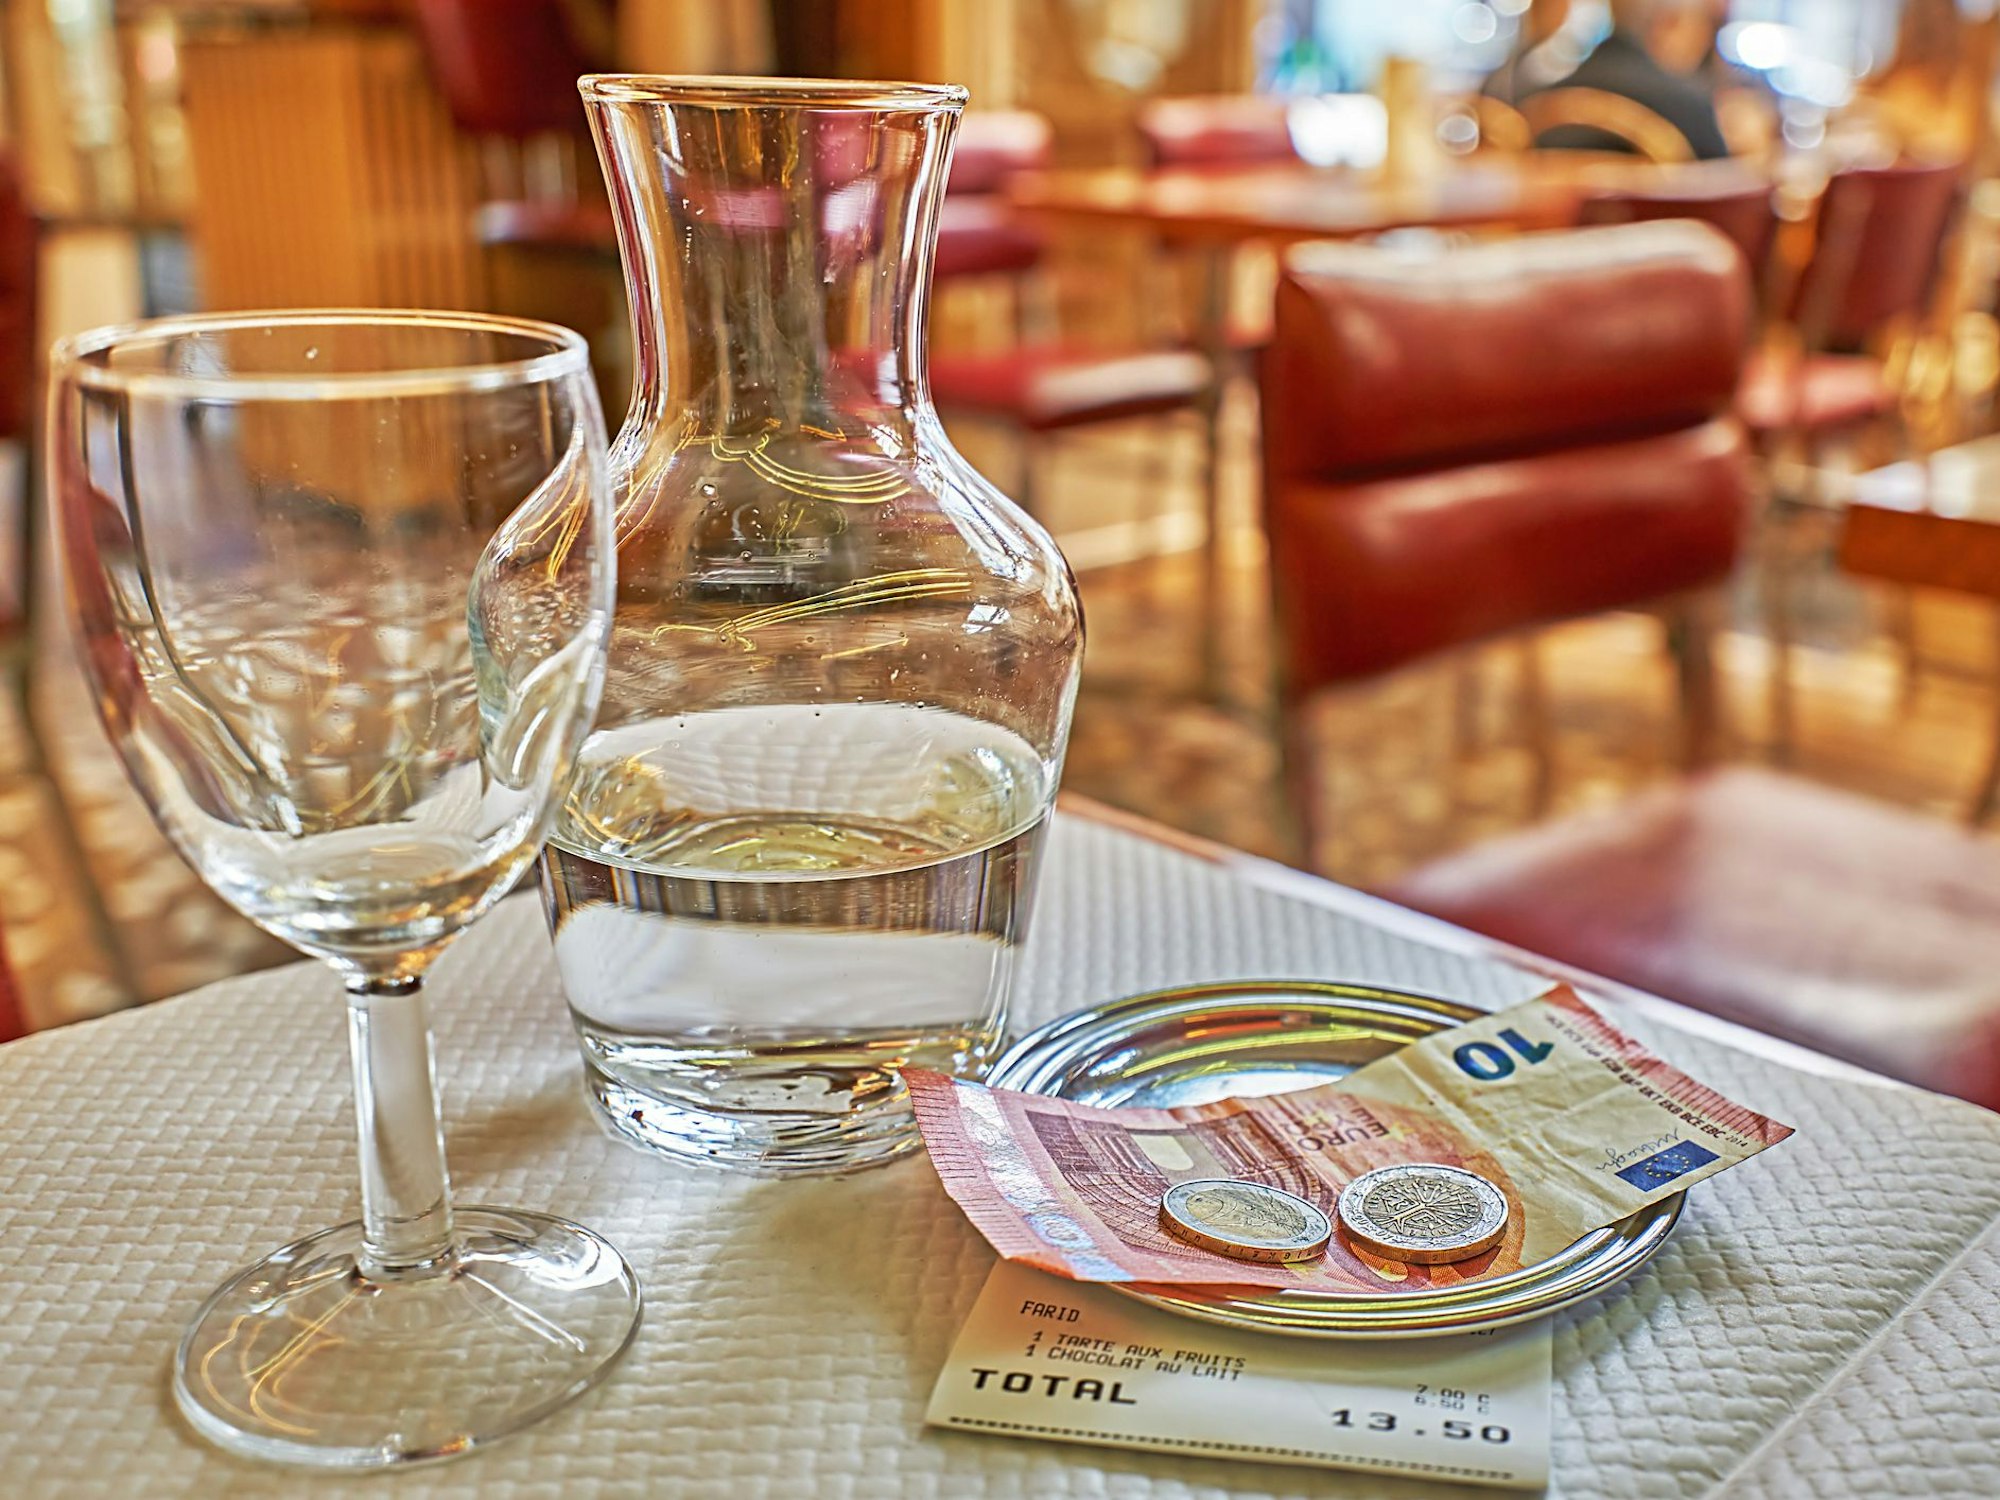 Man sieht Trinkgeld auf einem kleinen Teller auf dem Tisch liegen, neben einer Glaskaraffe und einem Trinkglas.